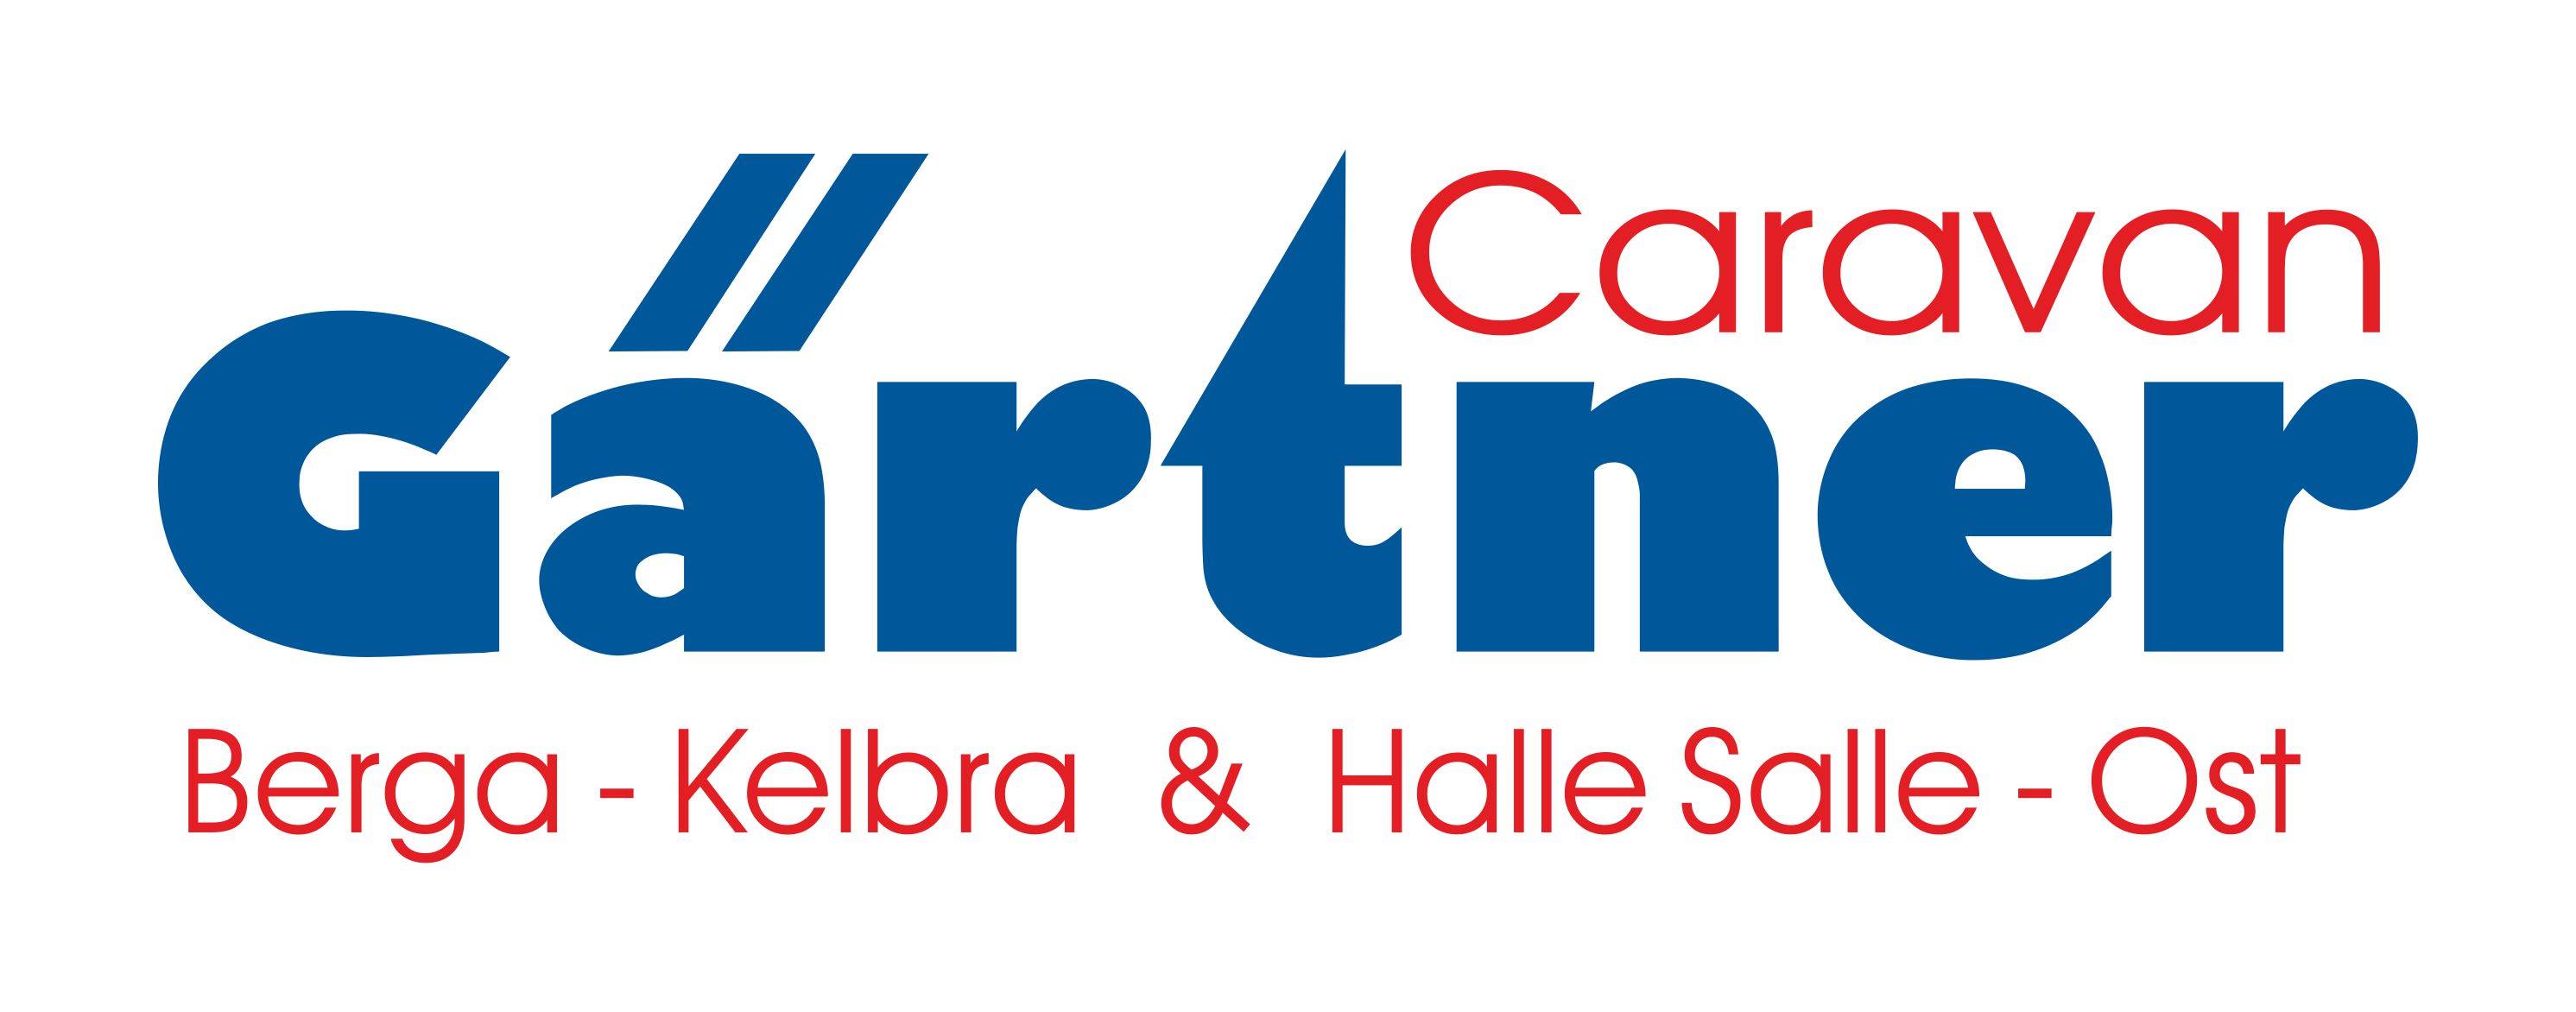 Gärtner-Caravan-Logo_05.06.2020-4-2.jpg